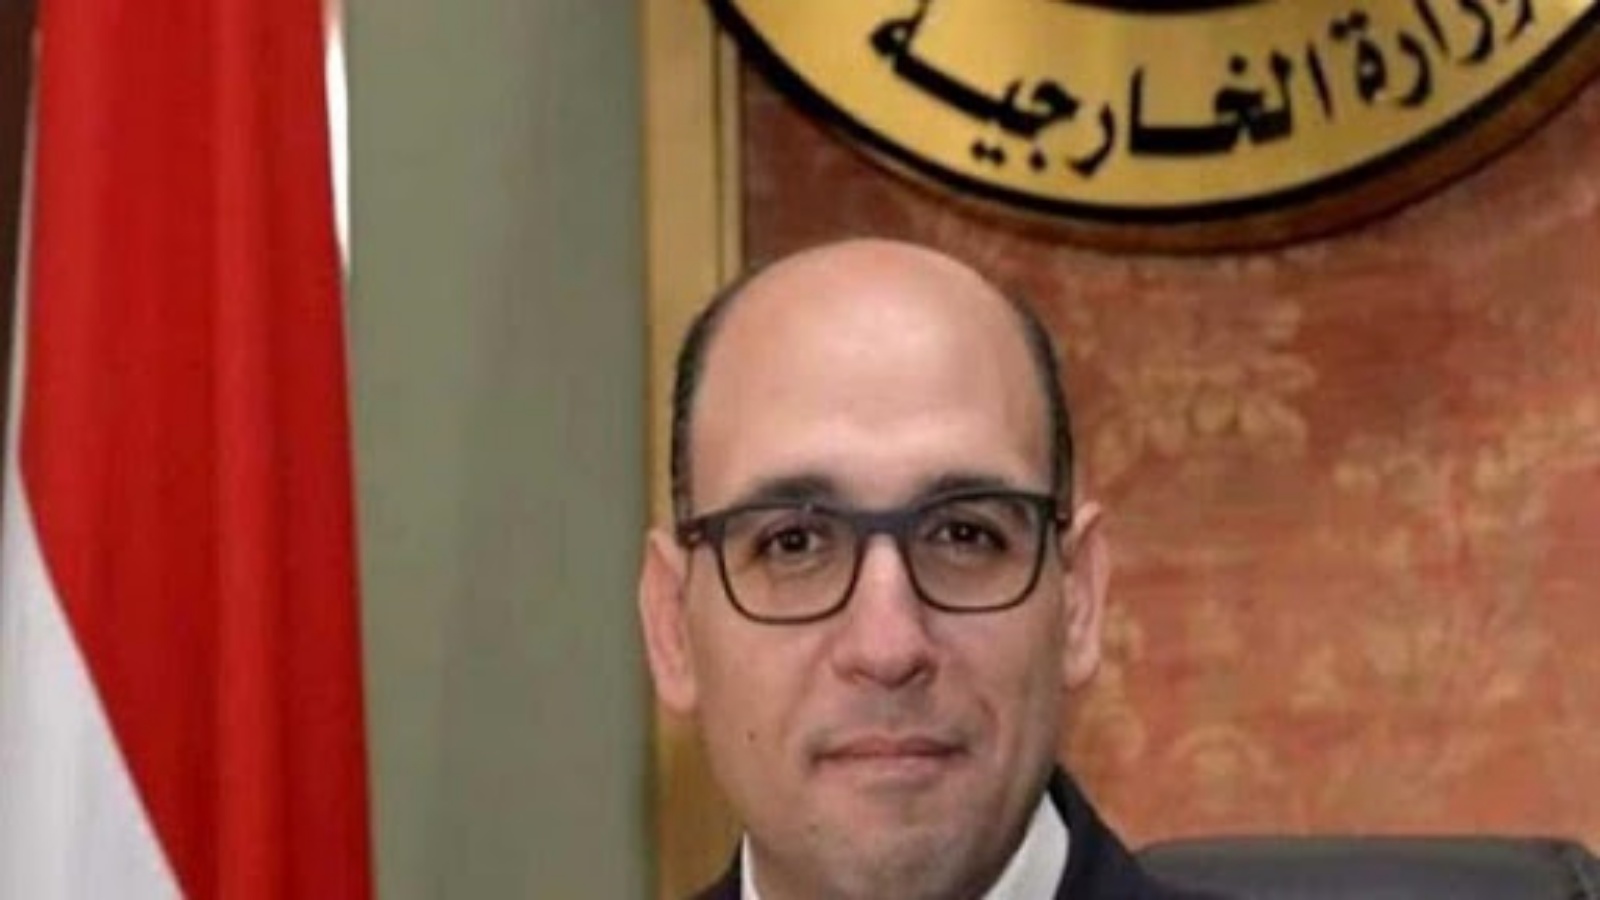 أحمد حافظ المتحدث الرسمي باسم وزارة الخارجية